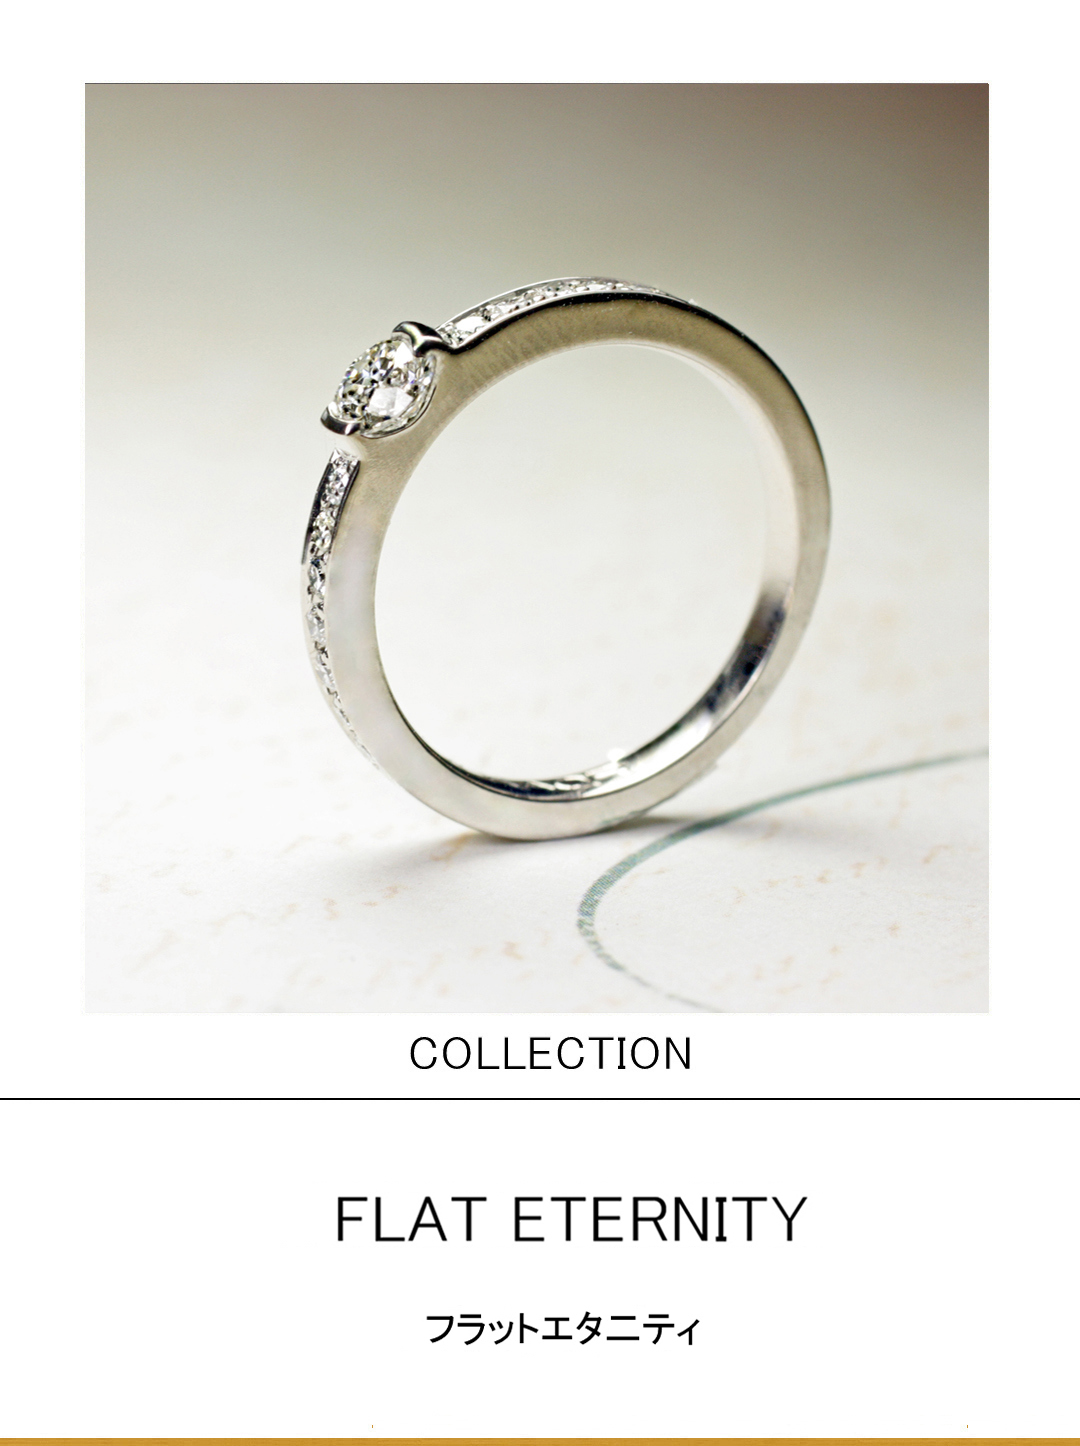 ダイヤが低く留められたエタ二ティスタイルの 婚約指輪コレクション　のサムネイル